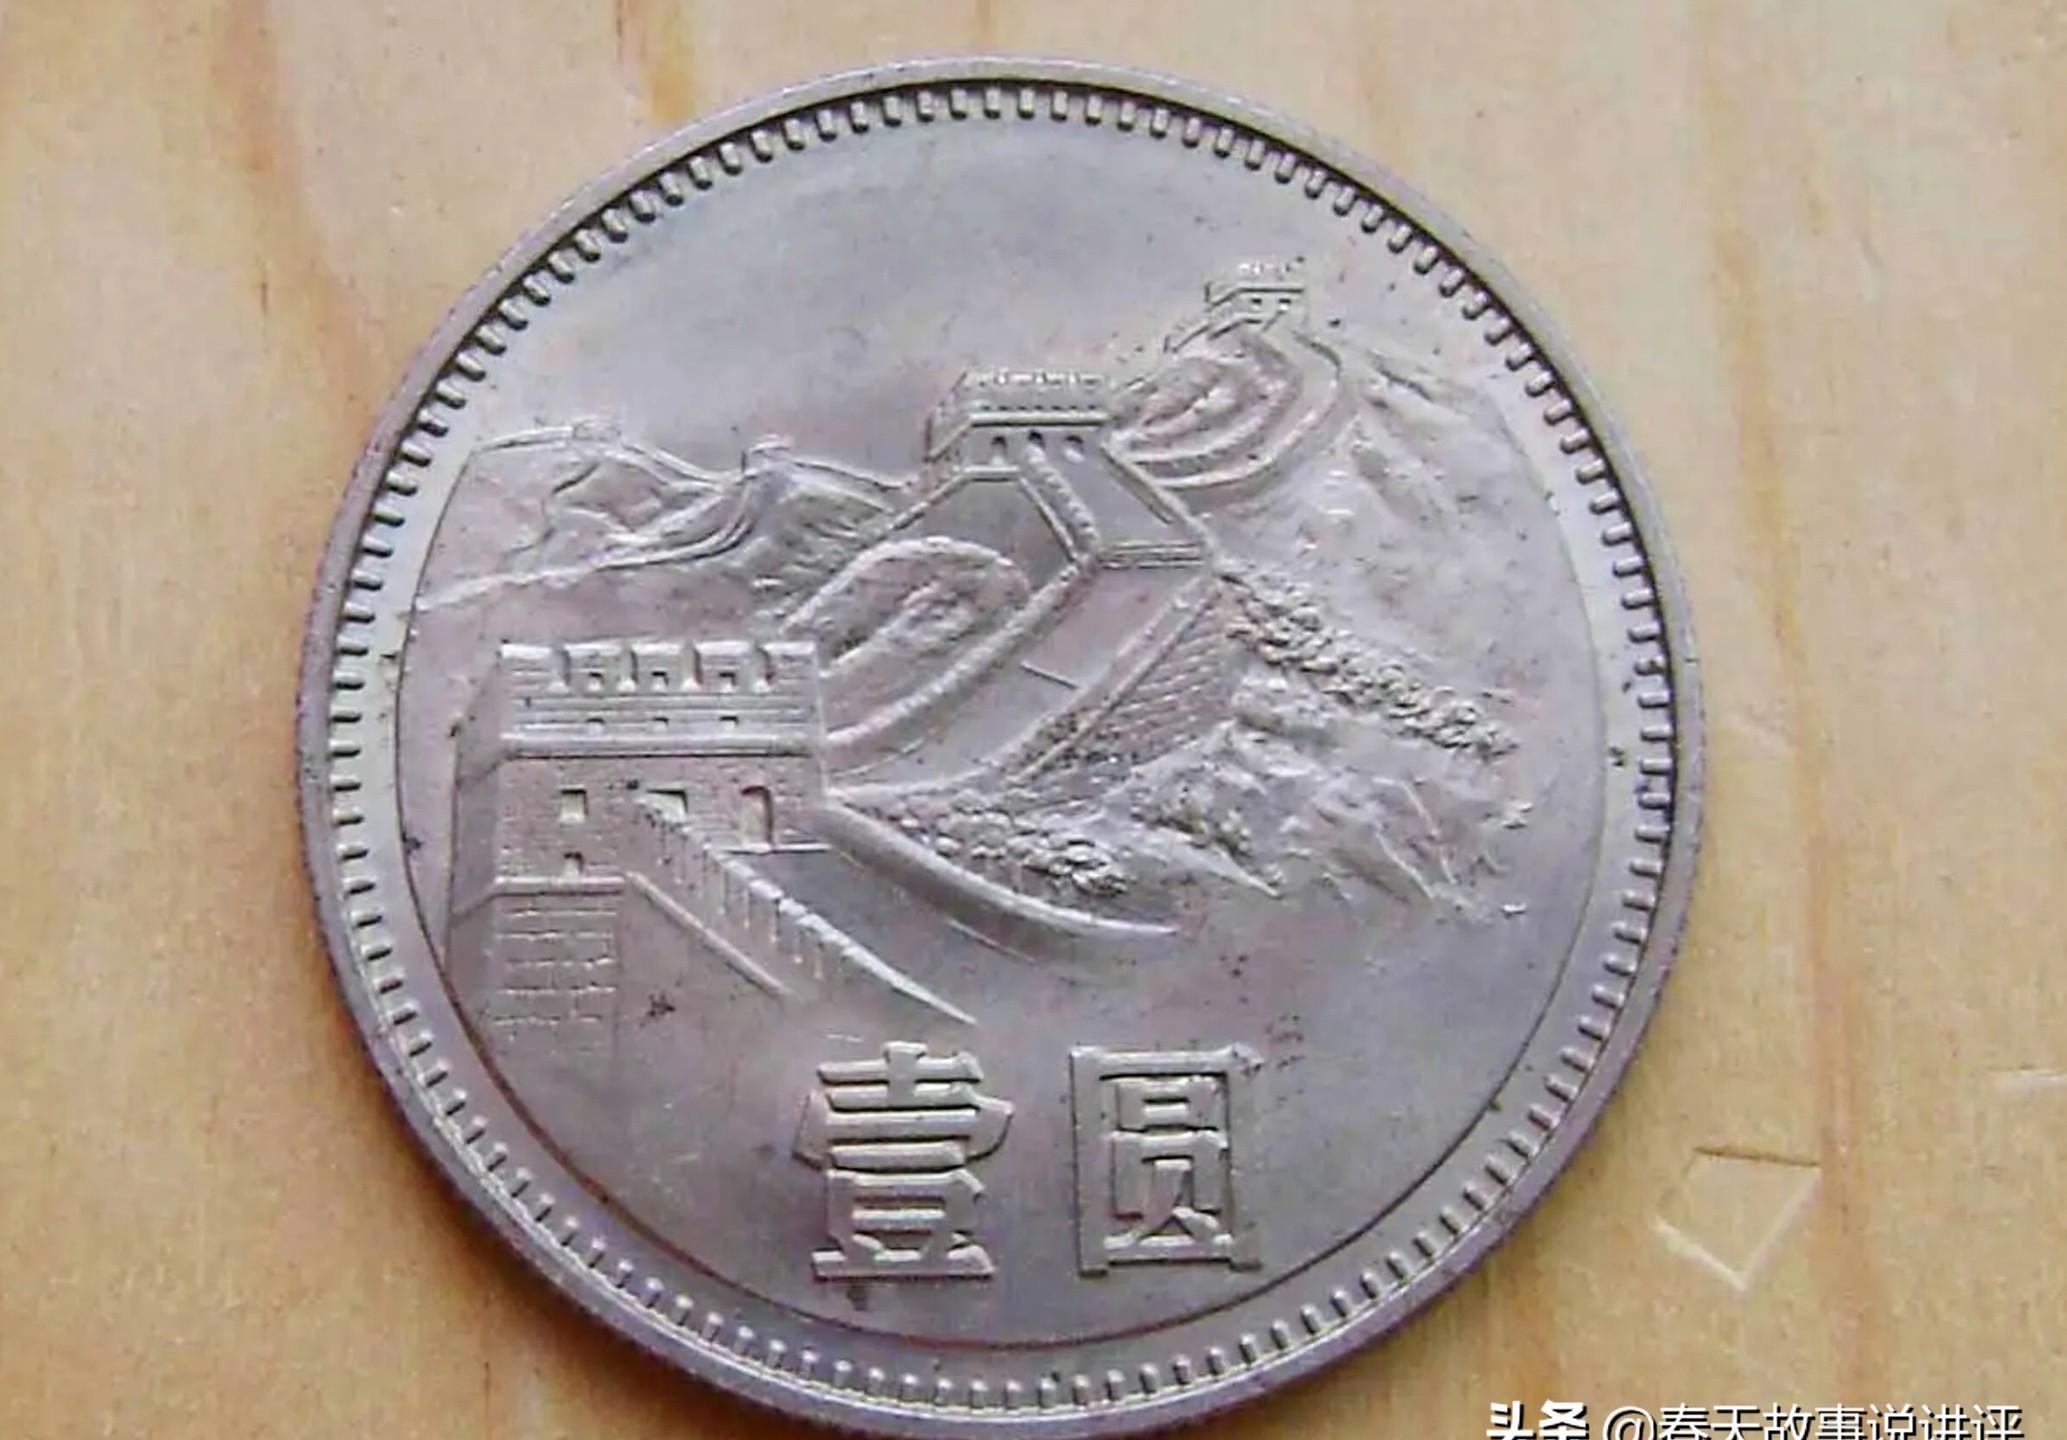 日本银元图片及价格表-图库-五毛网